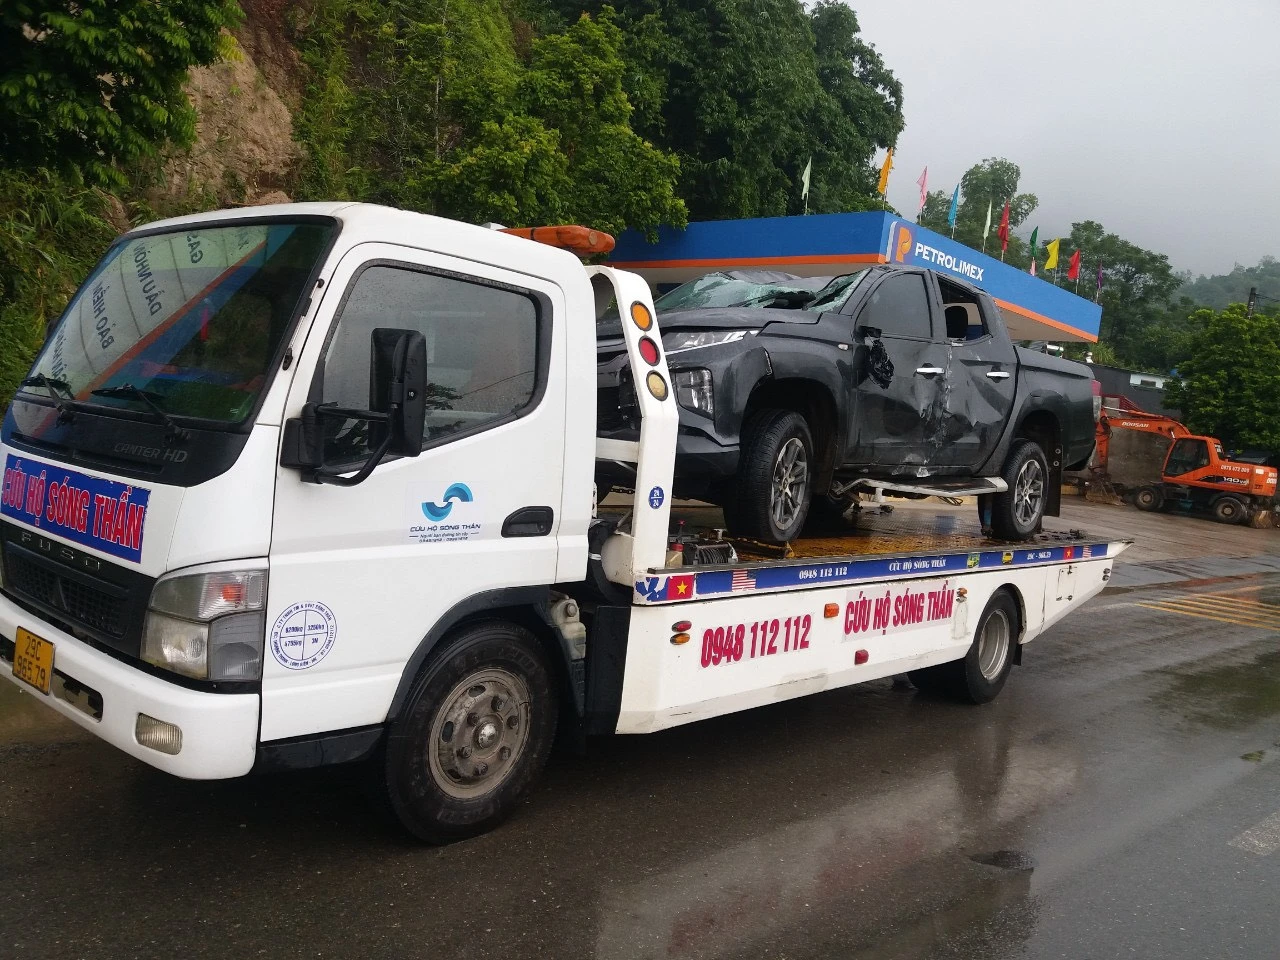 Địa chỉ chuyên cứu hộ xe hỏng, xe tai nạn ở Hà Nội | LH 0948.112.112